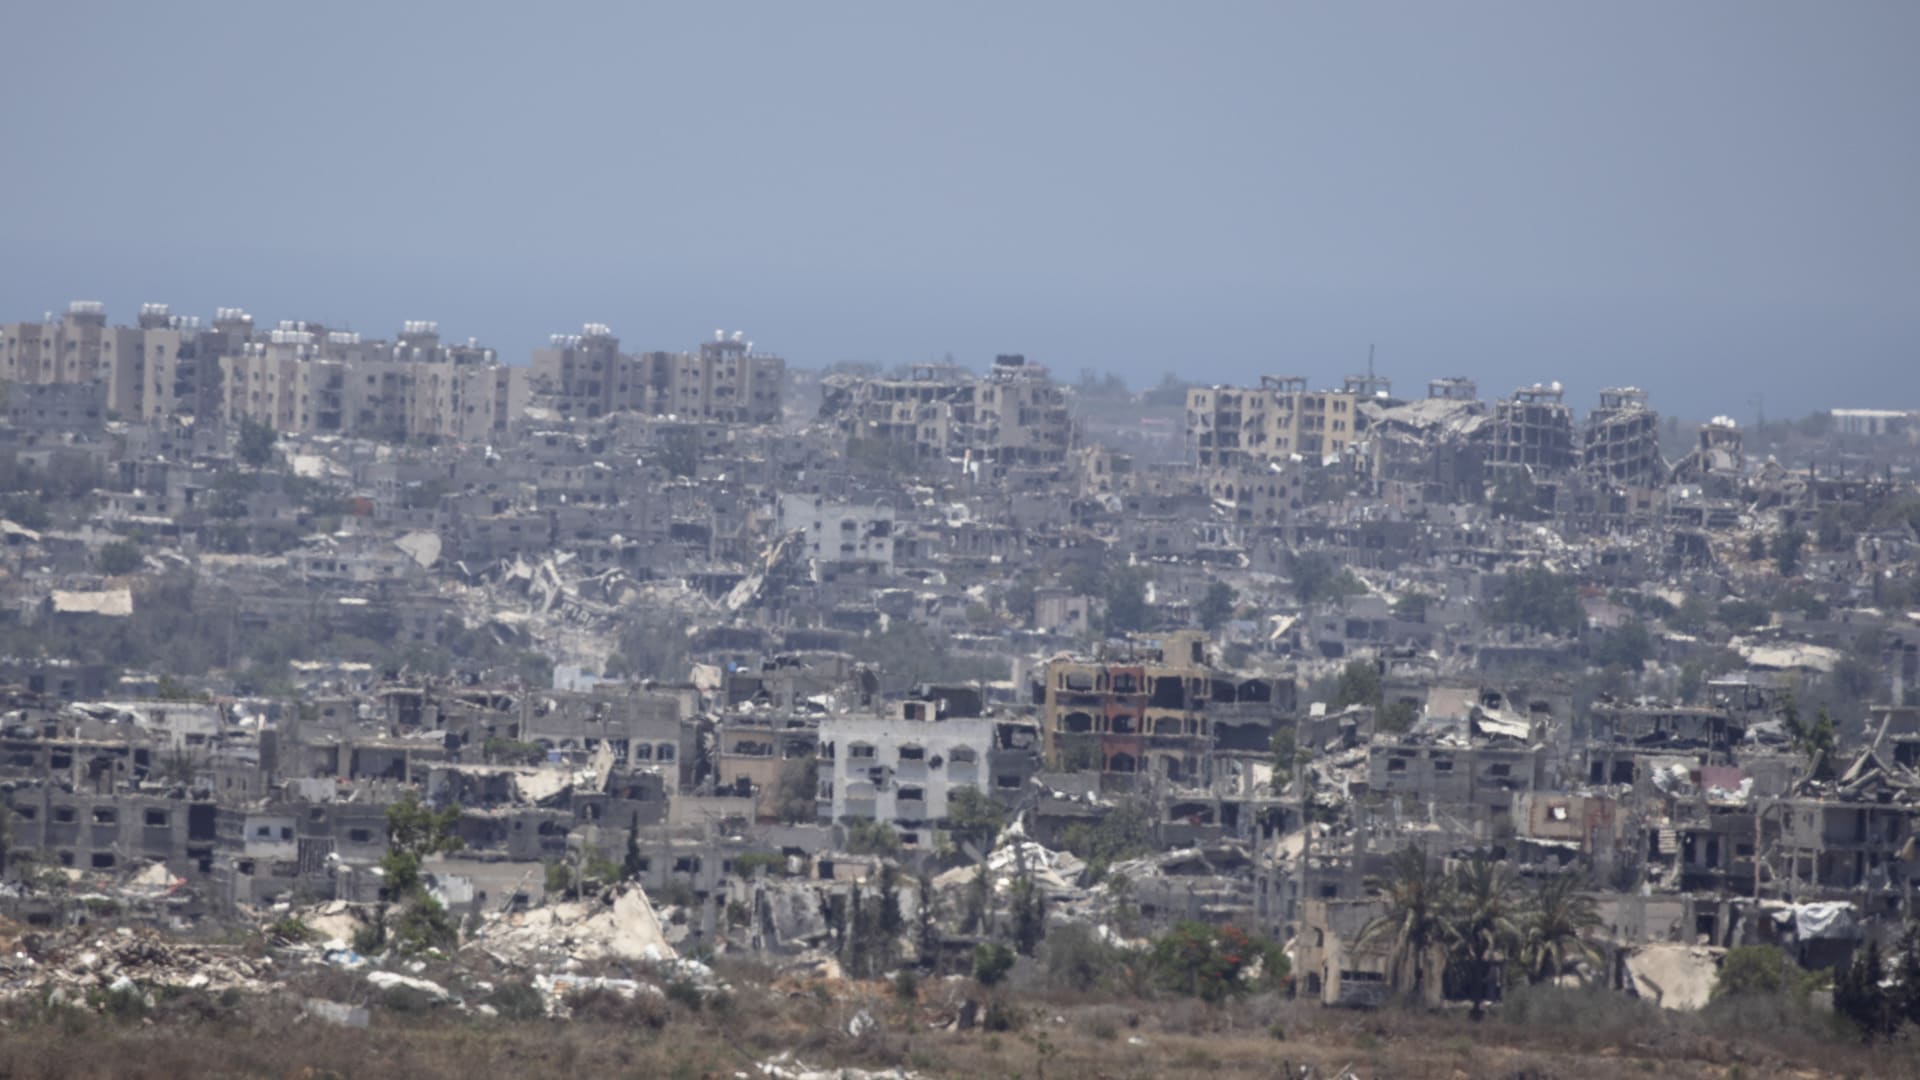 نتنياهو يوضح موقفه من المرحلة الحالية للحرب في غزة ويتعهد بـ"نقل القوة" إلى الجبهة الشمالية